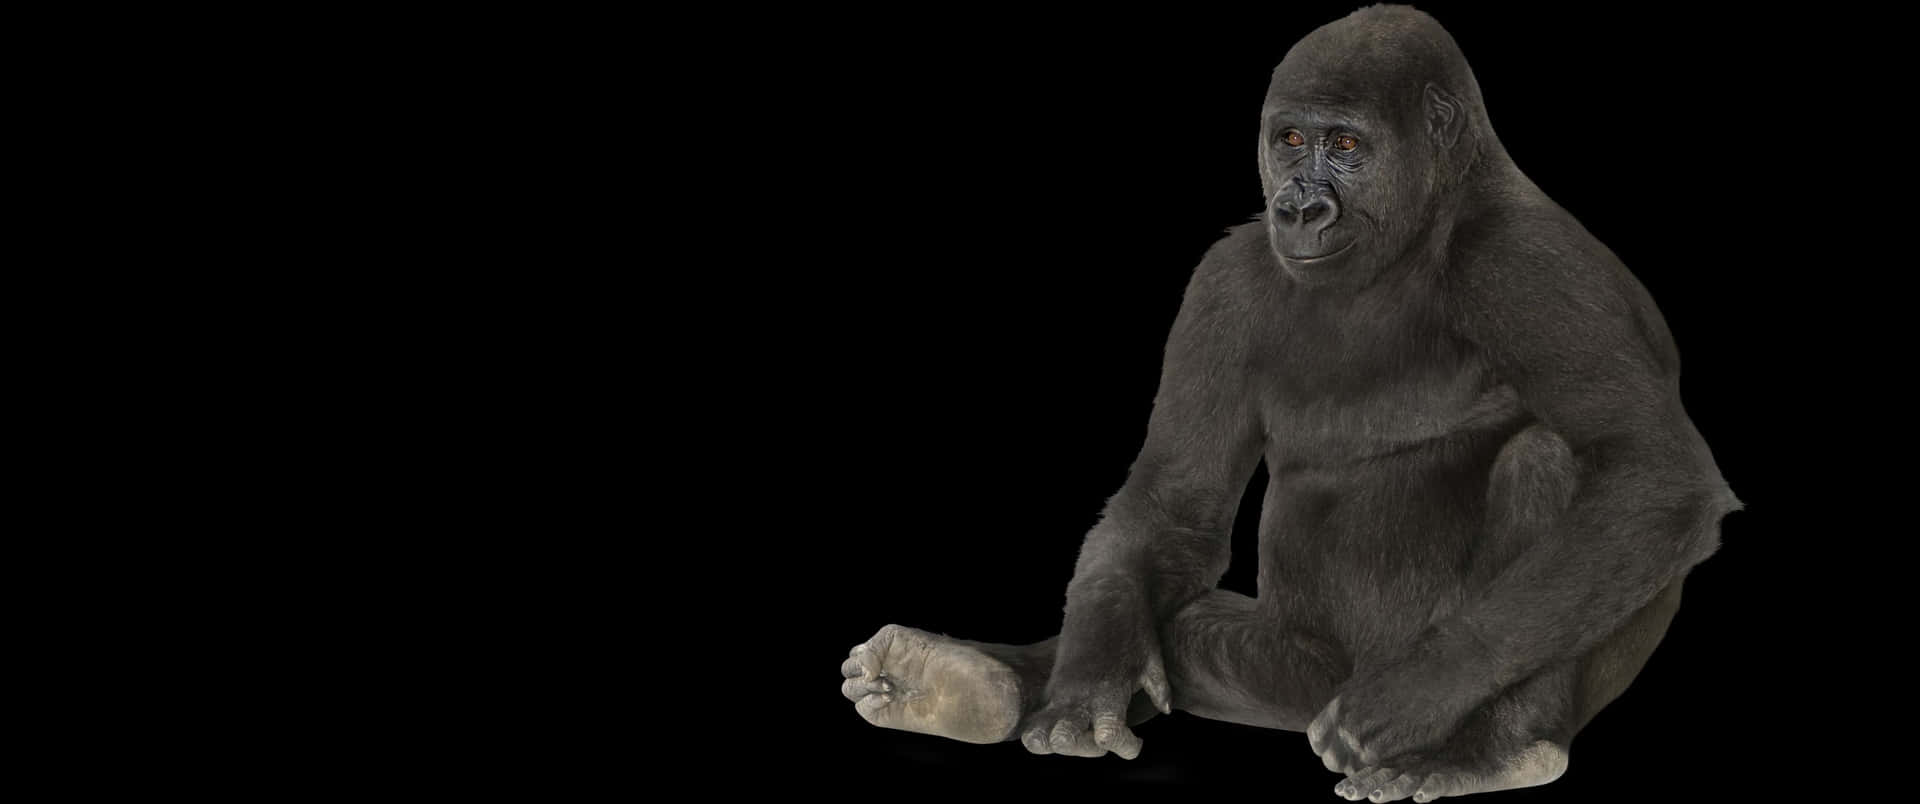 3440x1440p Gorilla, der sidder på jorden baggrund.